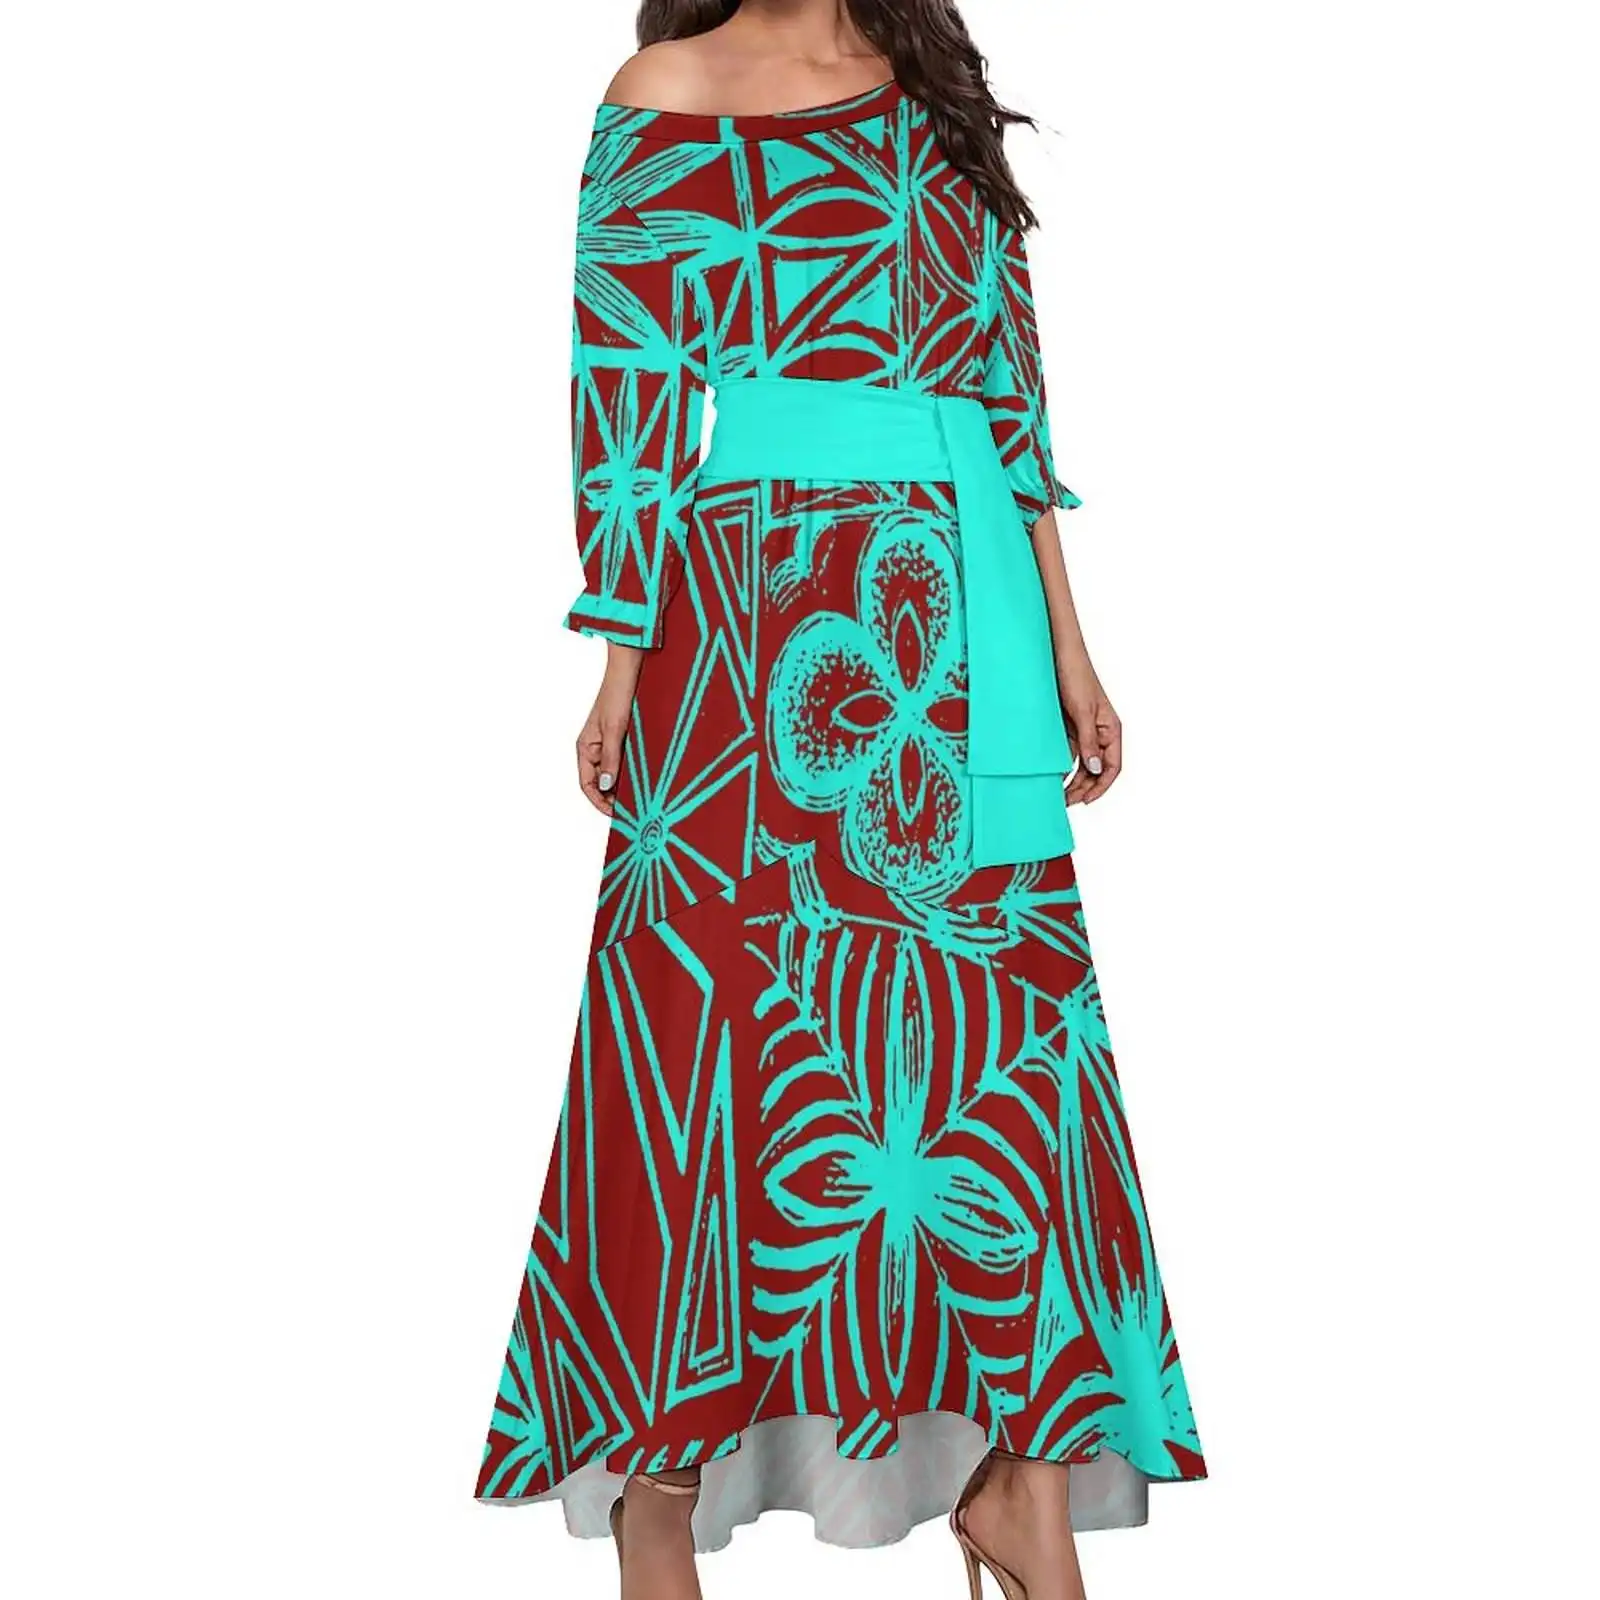 Mới Nhất Tắt Vai Đèn Lồng Tay Áo Plumeria In Maxi Dress Polynesian Tribal Thiết Kế Cộng Với Kích Thước Nàng Tiên Cá Ăn Mặc Cho Buổi Tối Gown